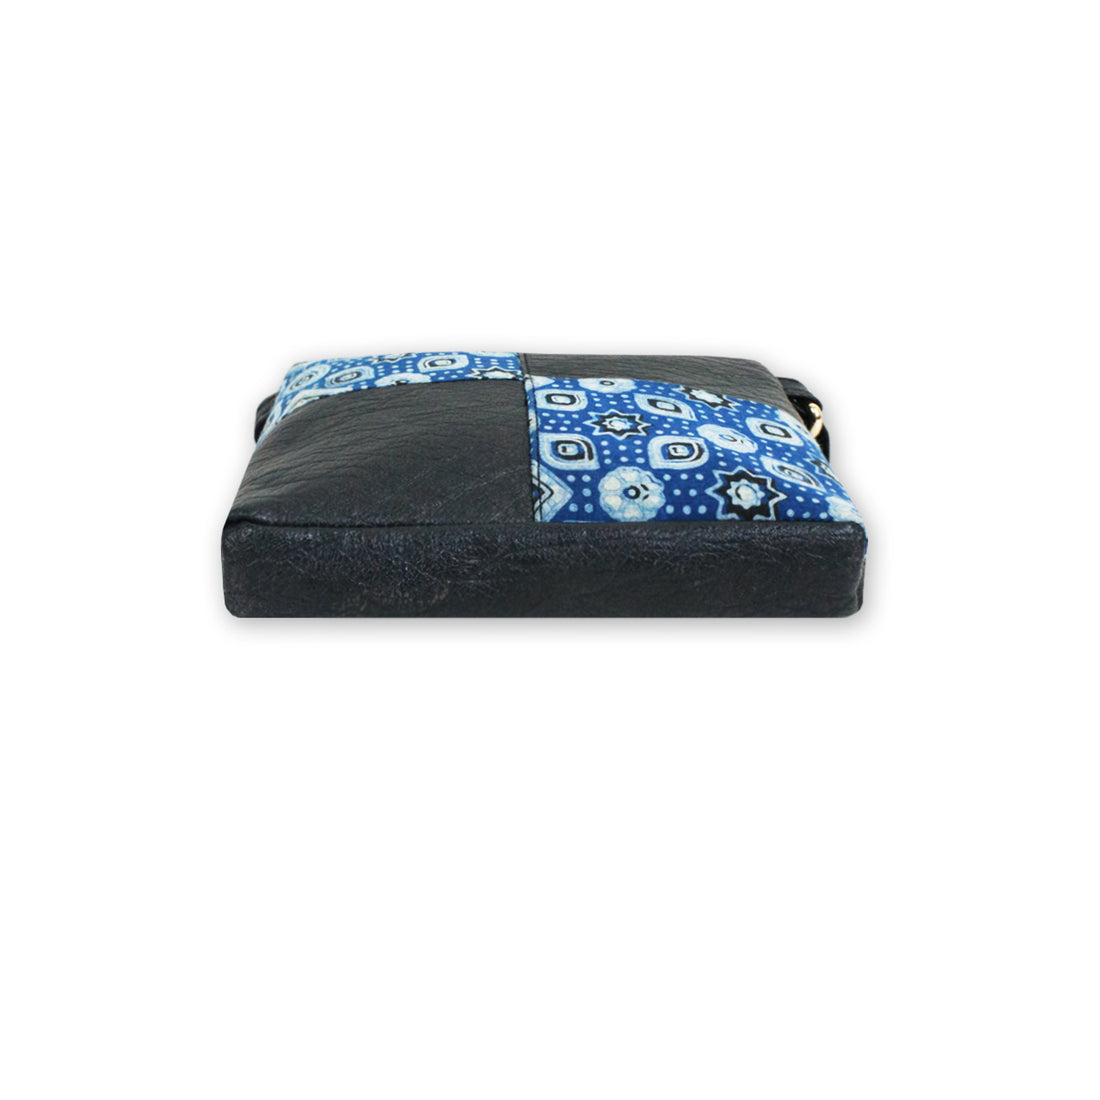 Blue Ajrakh Mobile Sling Bag